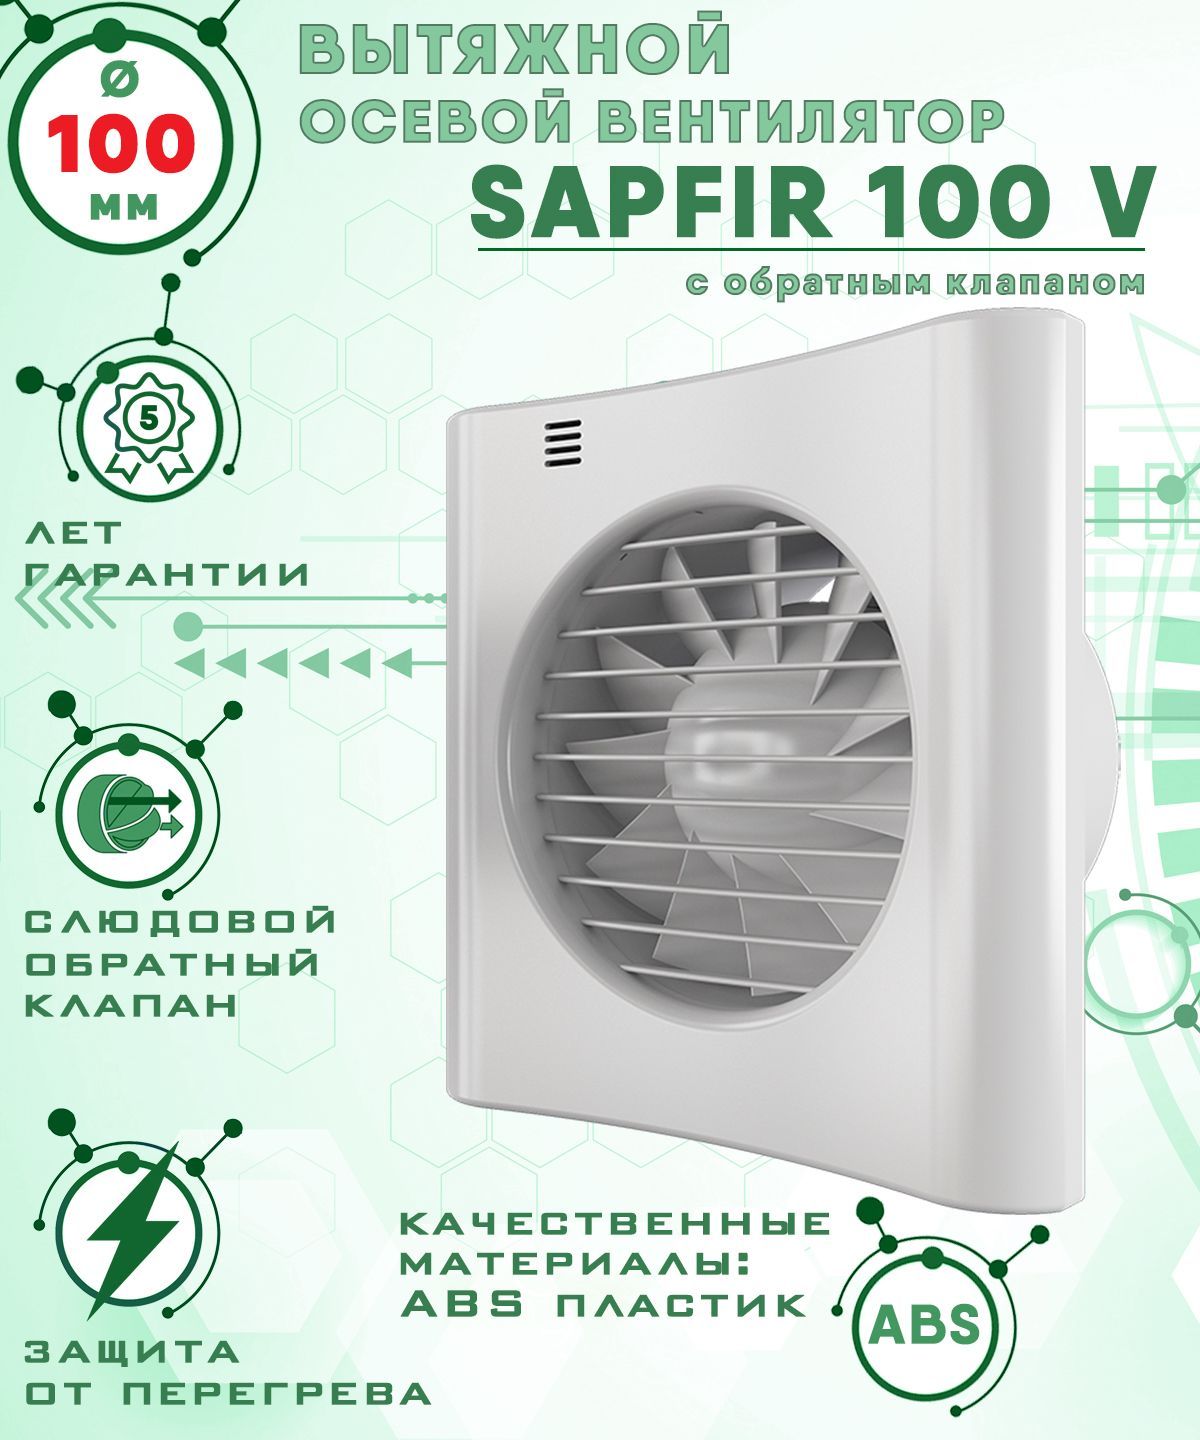 фото Sapfir 100 v вентилятор вытяжной 14 вт с обратным клапаном диаметр 100 мм zernberg